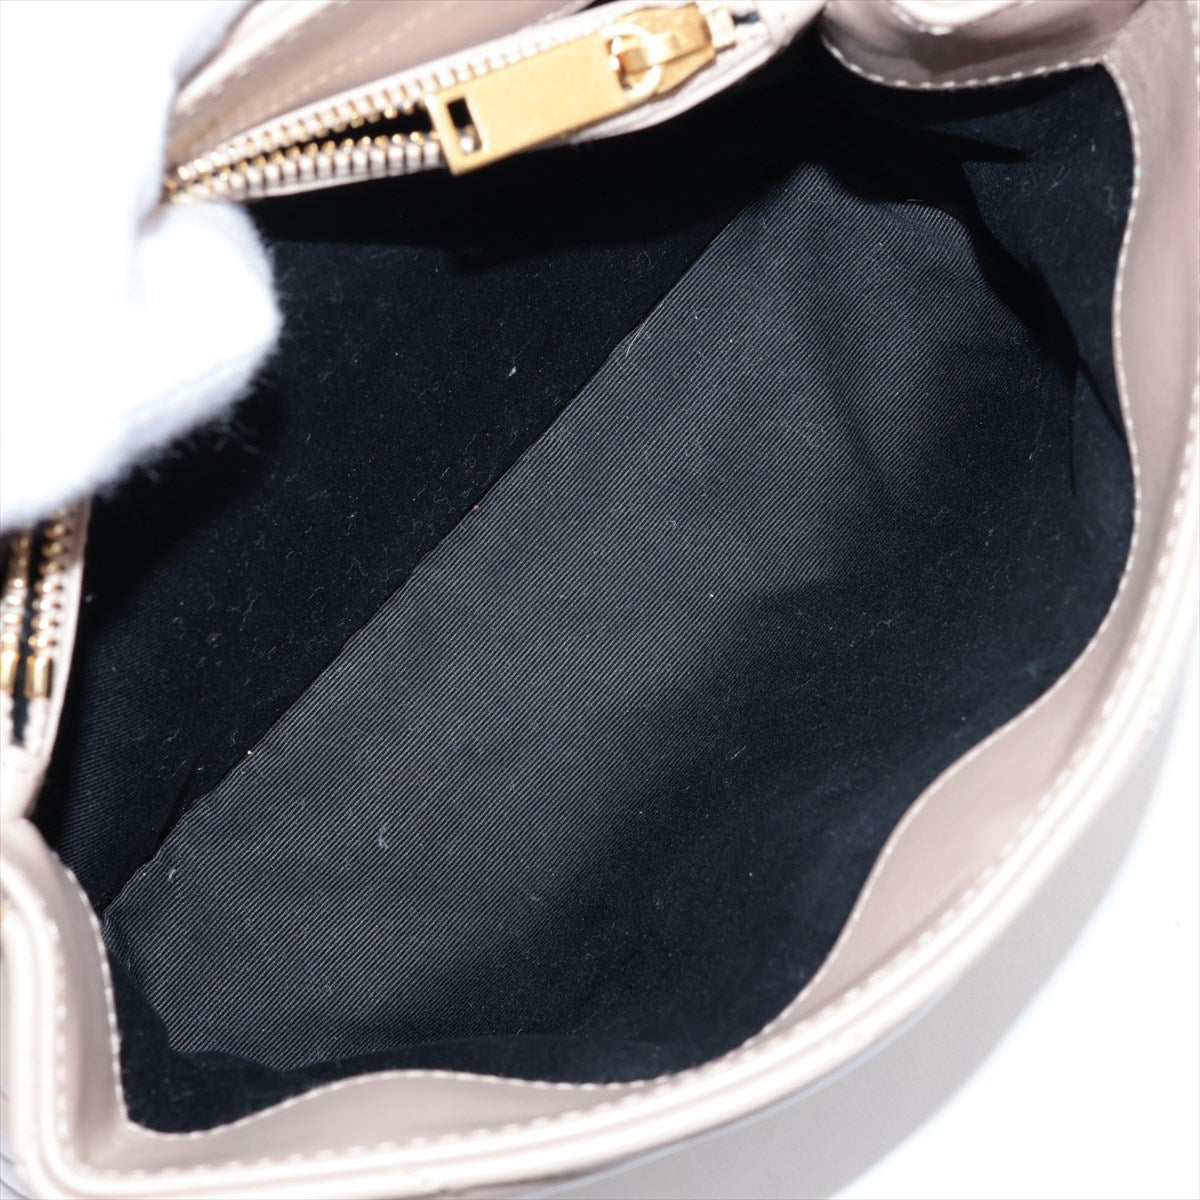 Saint Laurent  Rule Leather Chain Shoulder Bag Beige 494699